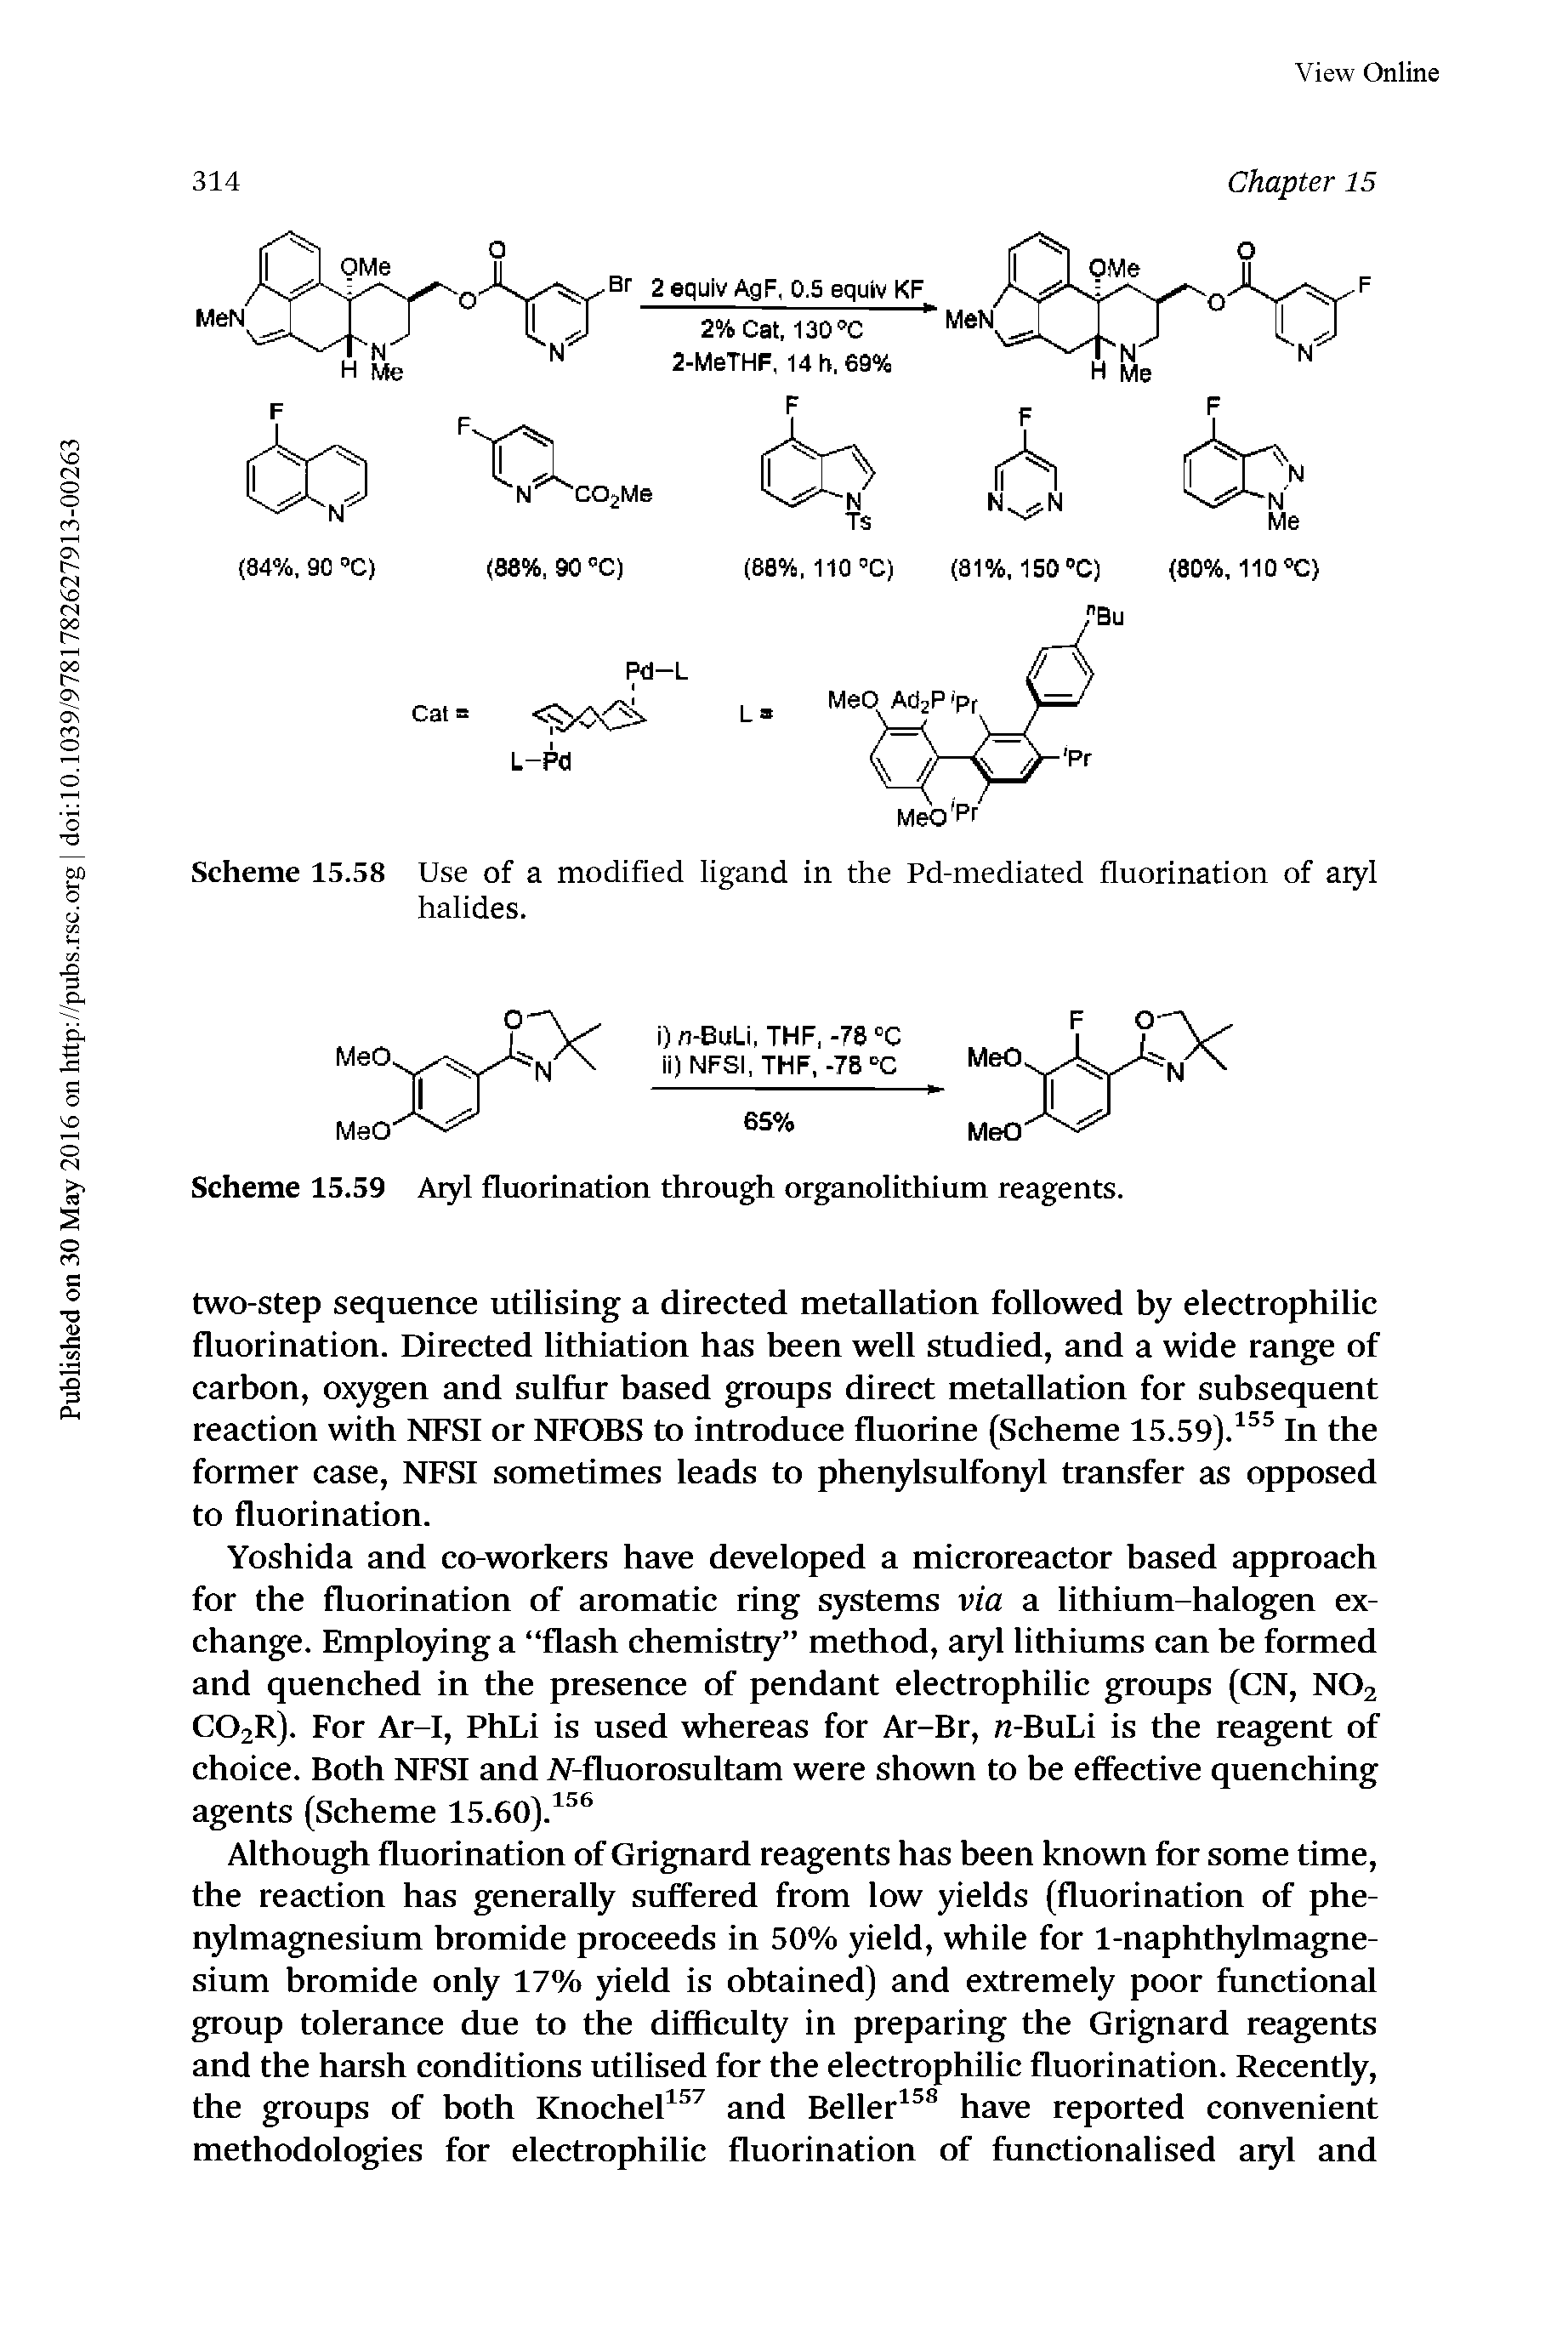 Scheme 15.59 Aryl fluorination through organolithium reagents.